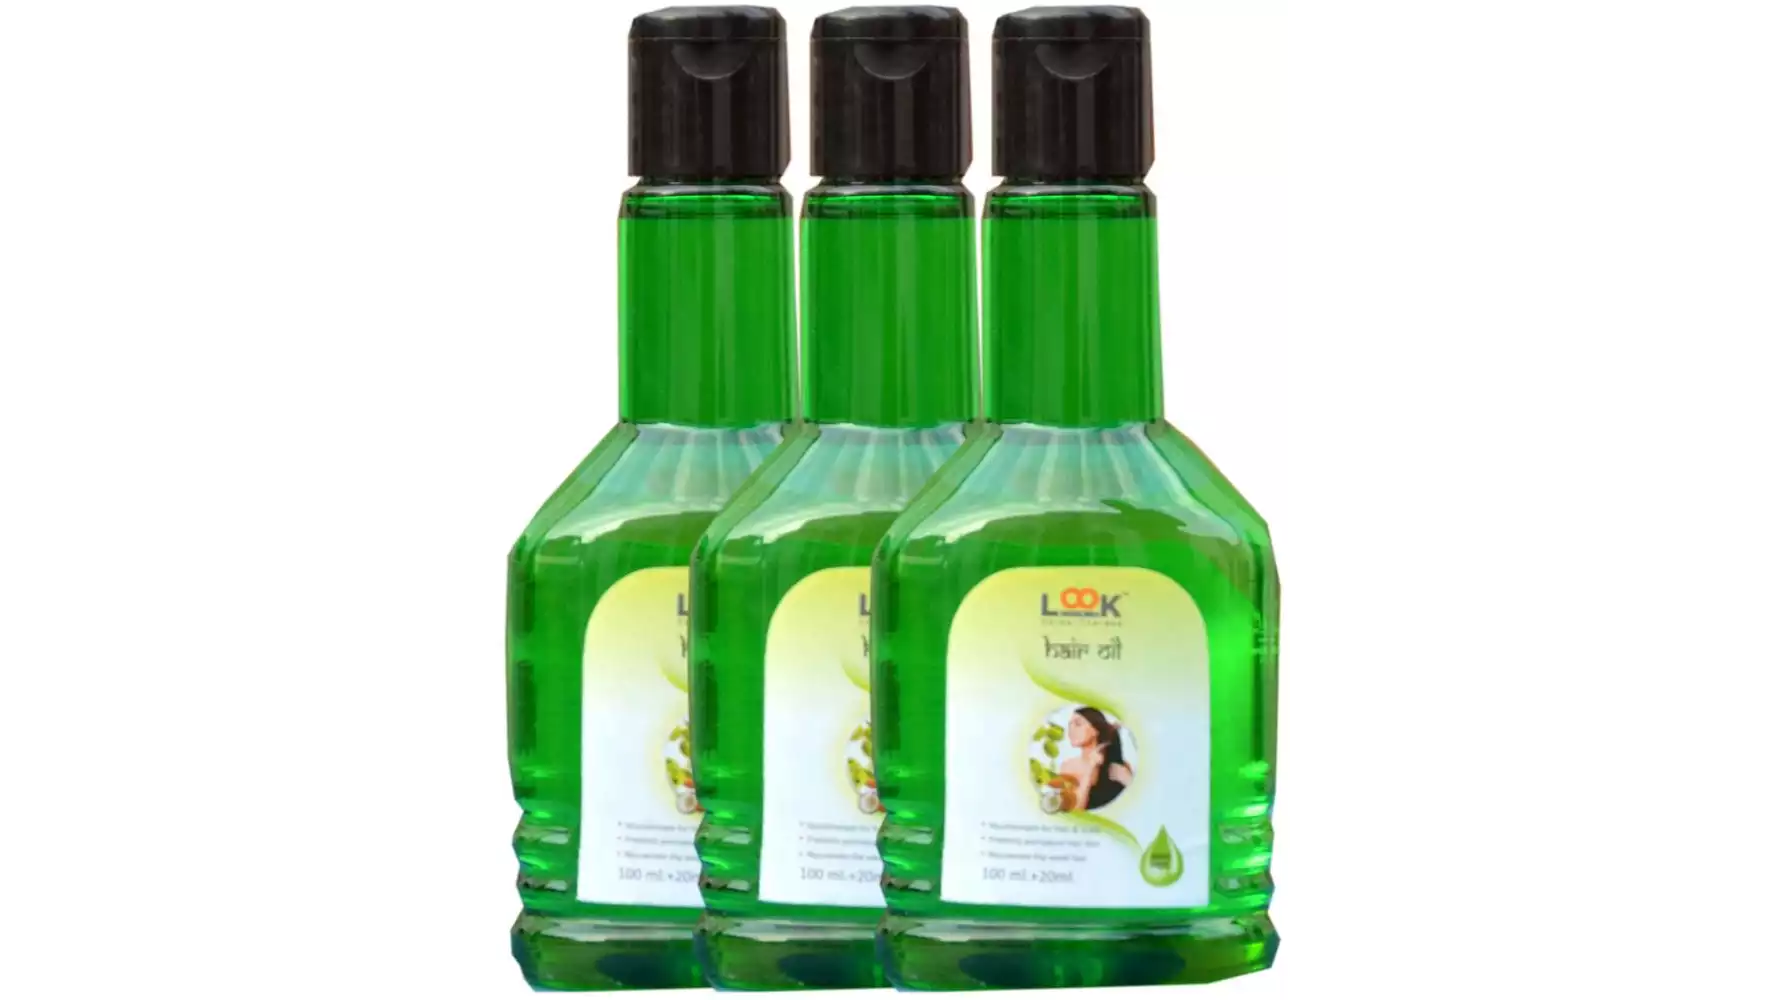 Rajni Herbals Look 18 Herbal Hair Oil (100ml, Pack of 3)